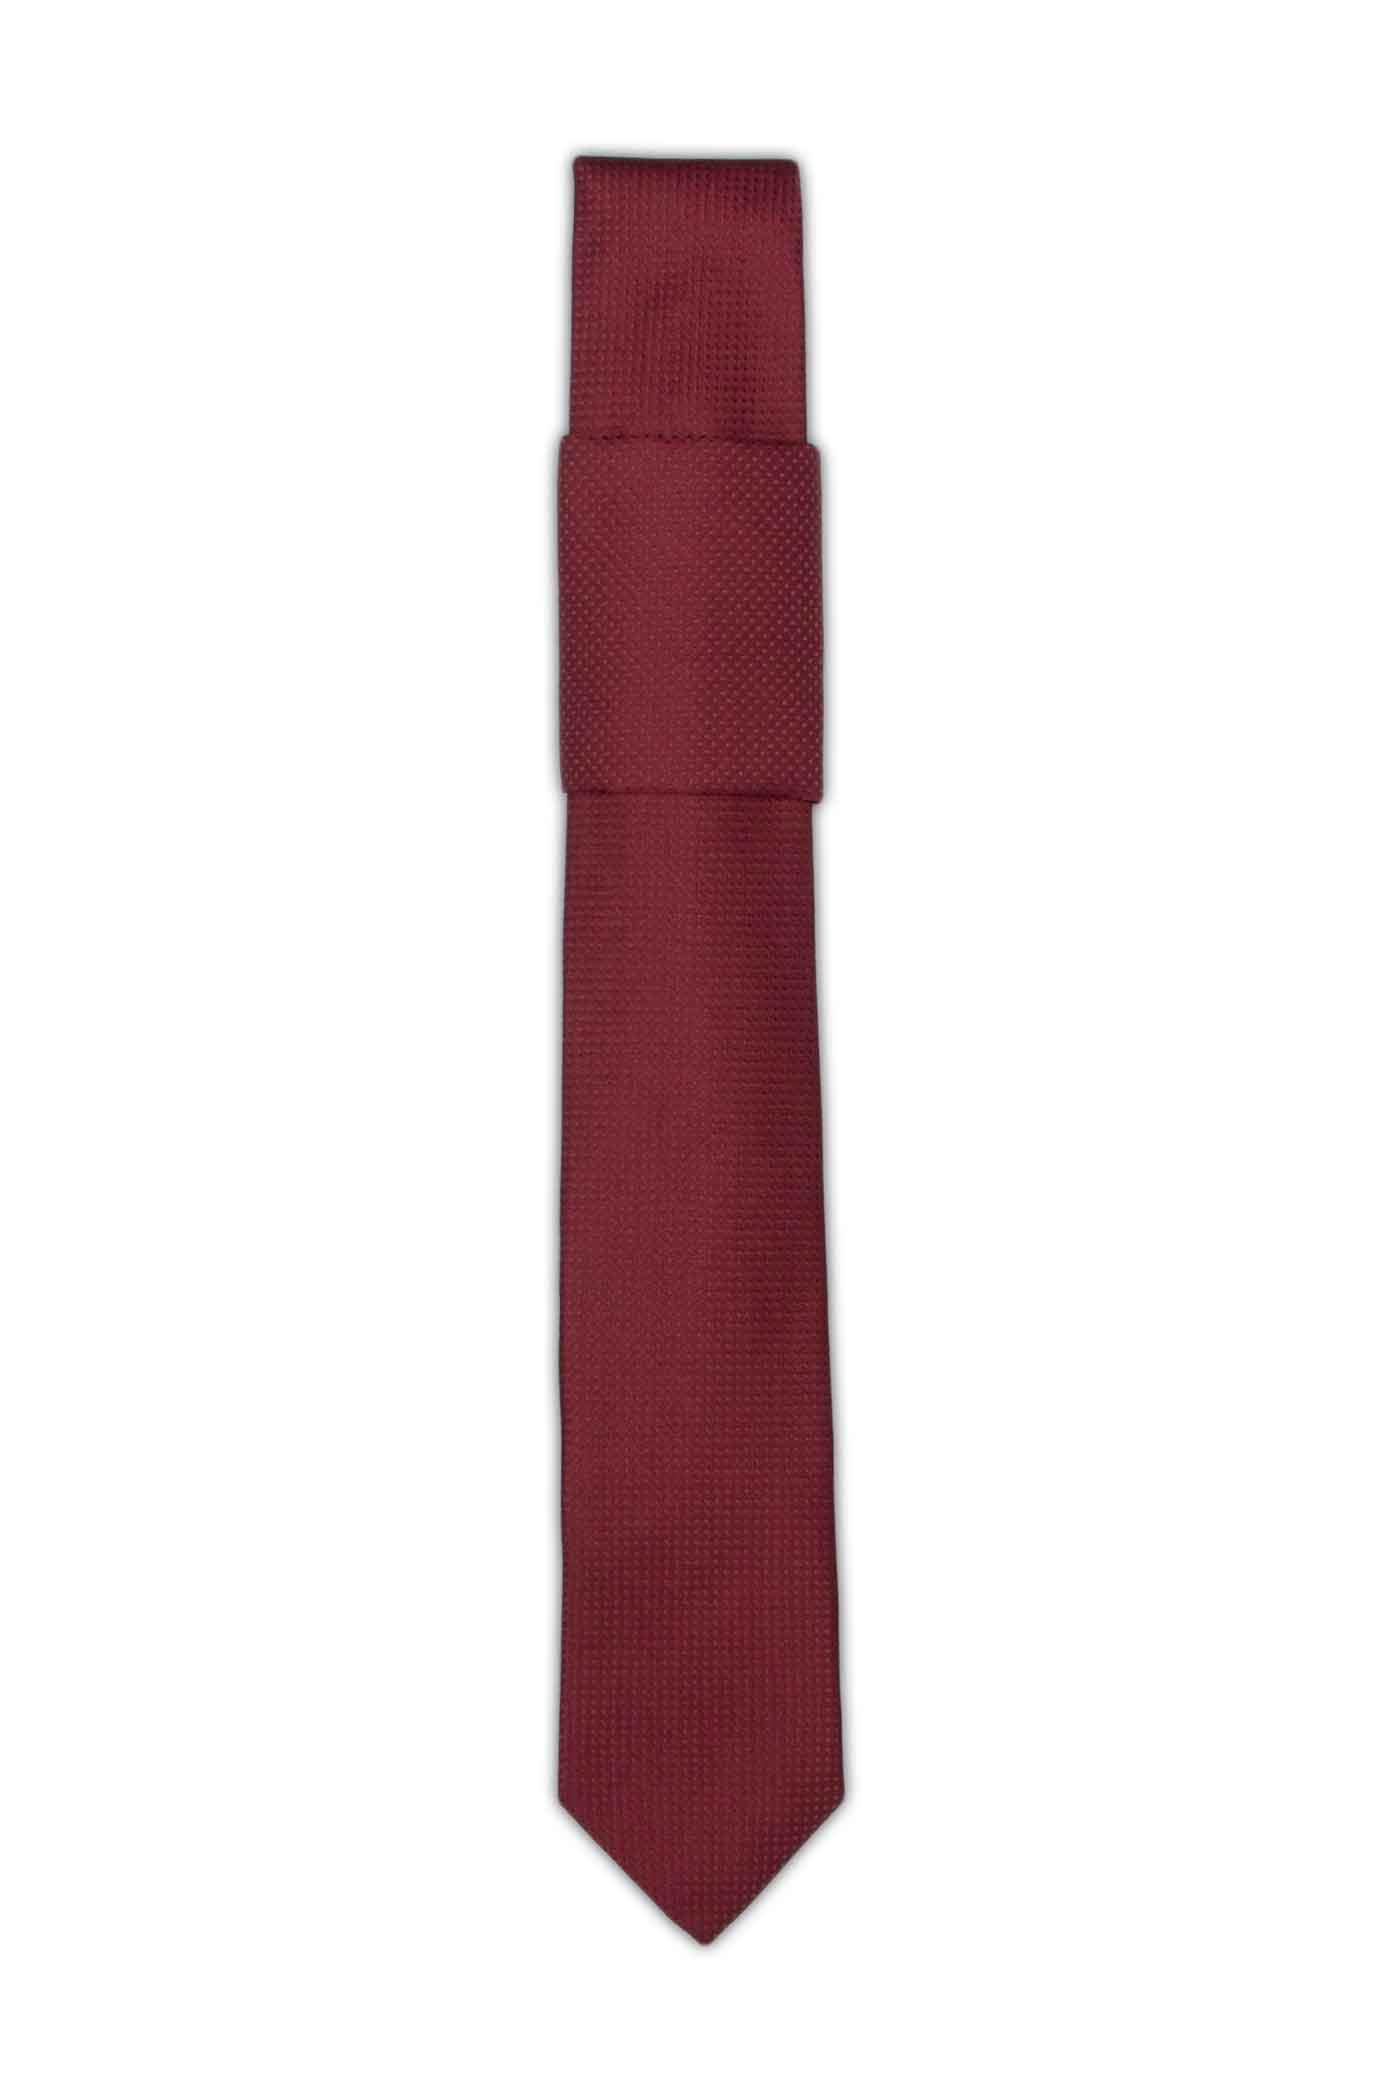 کراوات پوشت دار 200014